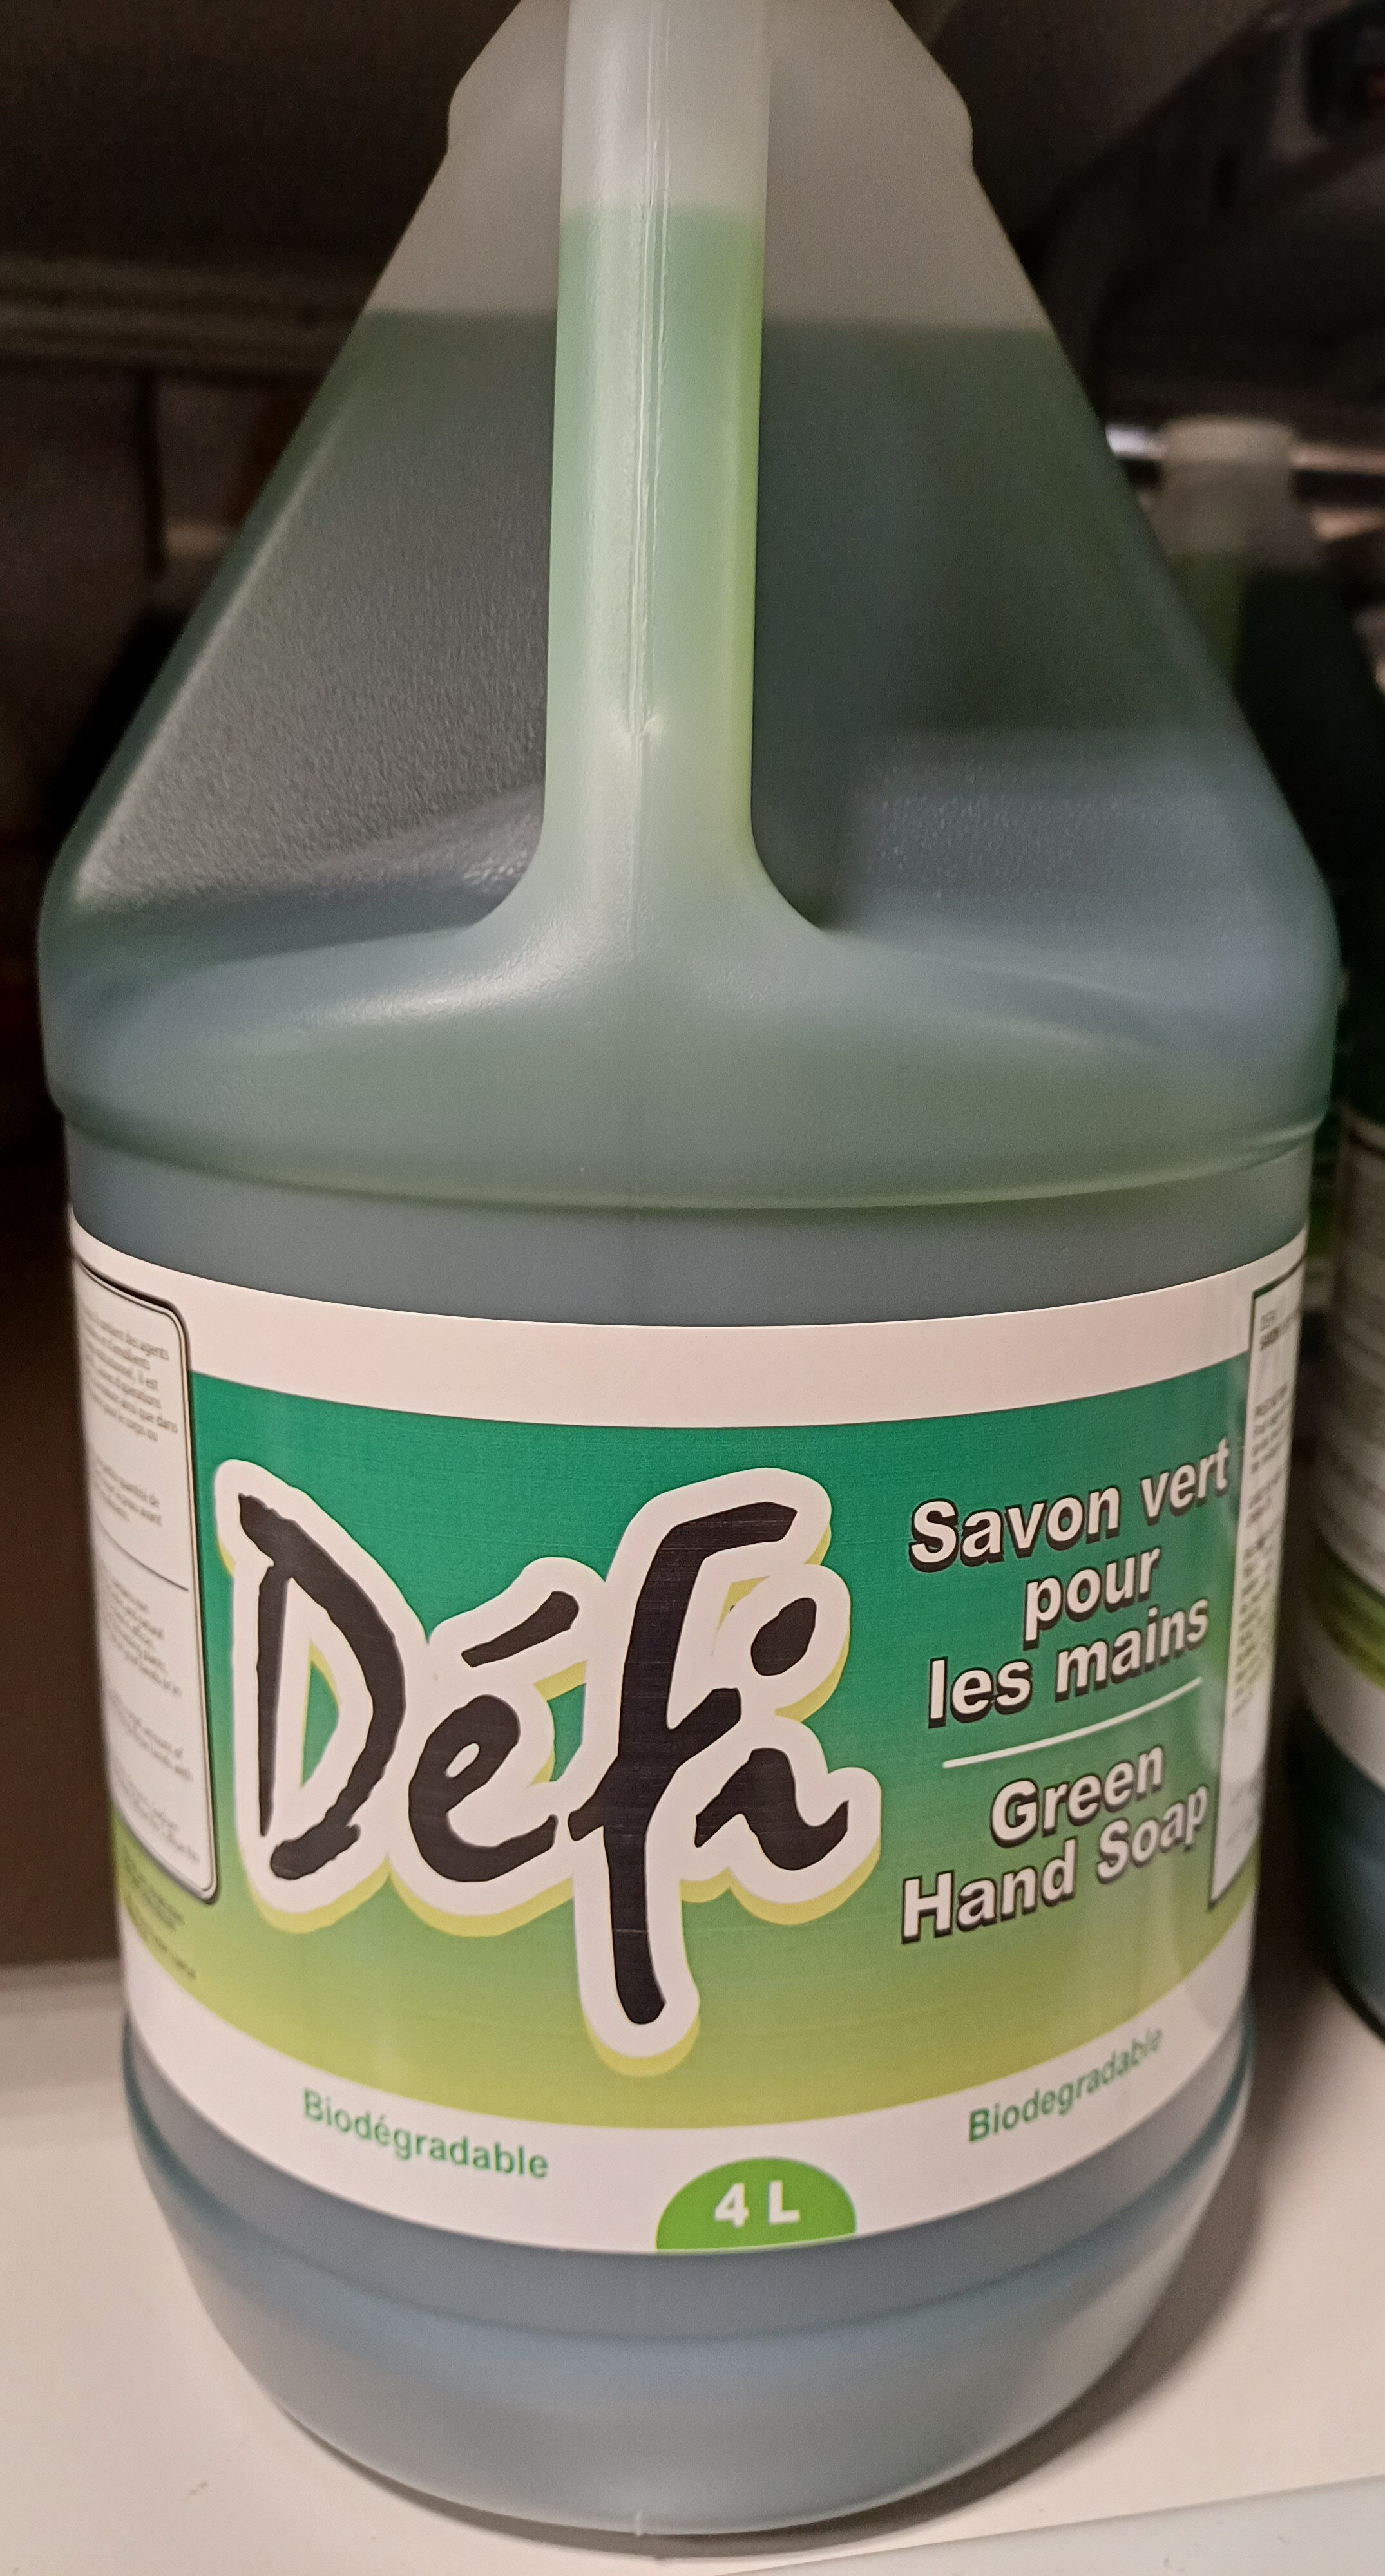 savon vert pour les mains - Produkt - fr